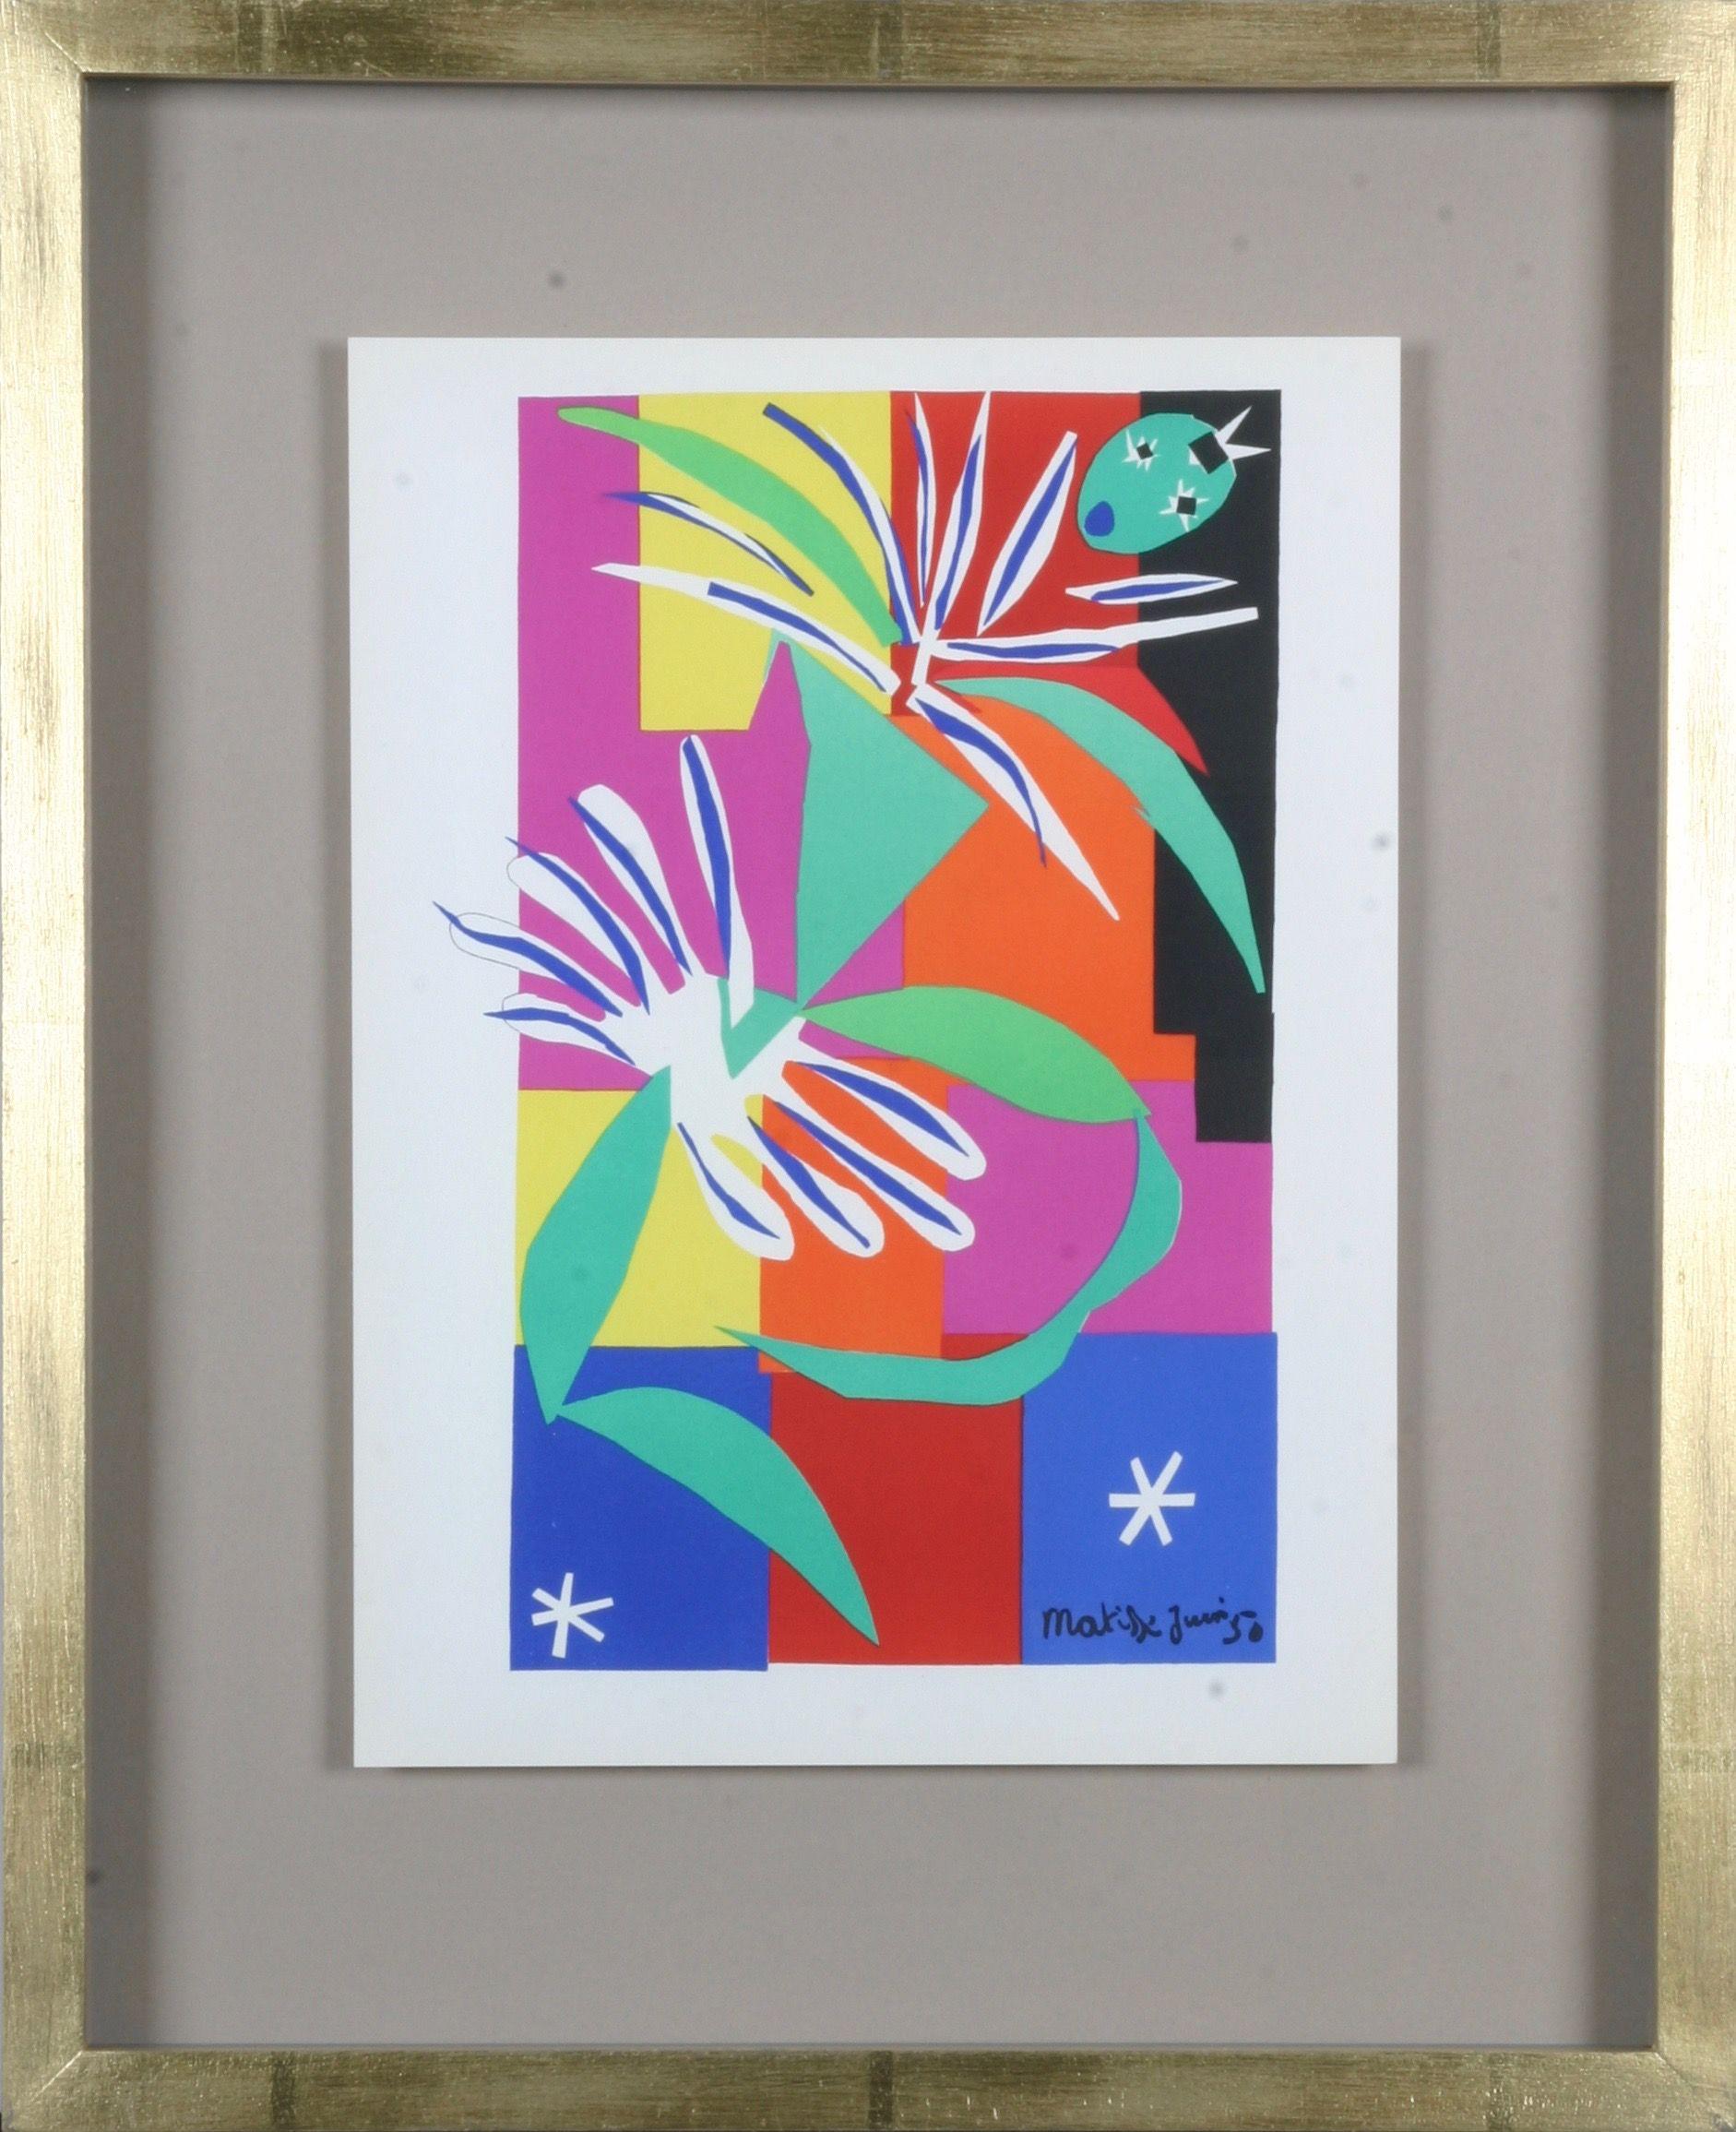 Henri Matisse : Lithographies en couleurs d'après les découpages, épreuve encadrée, 1958 

En 1941, Matisse subit une opération de l'abdomen, après quoi il trouve que la peinture est physiquement éprouvante. Il se consacre de plus en plus à